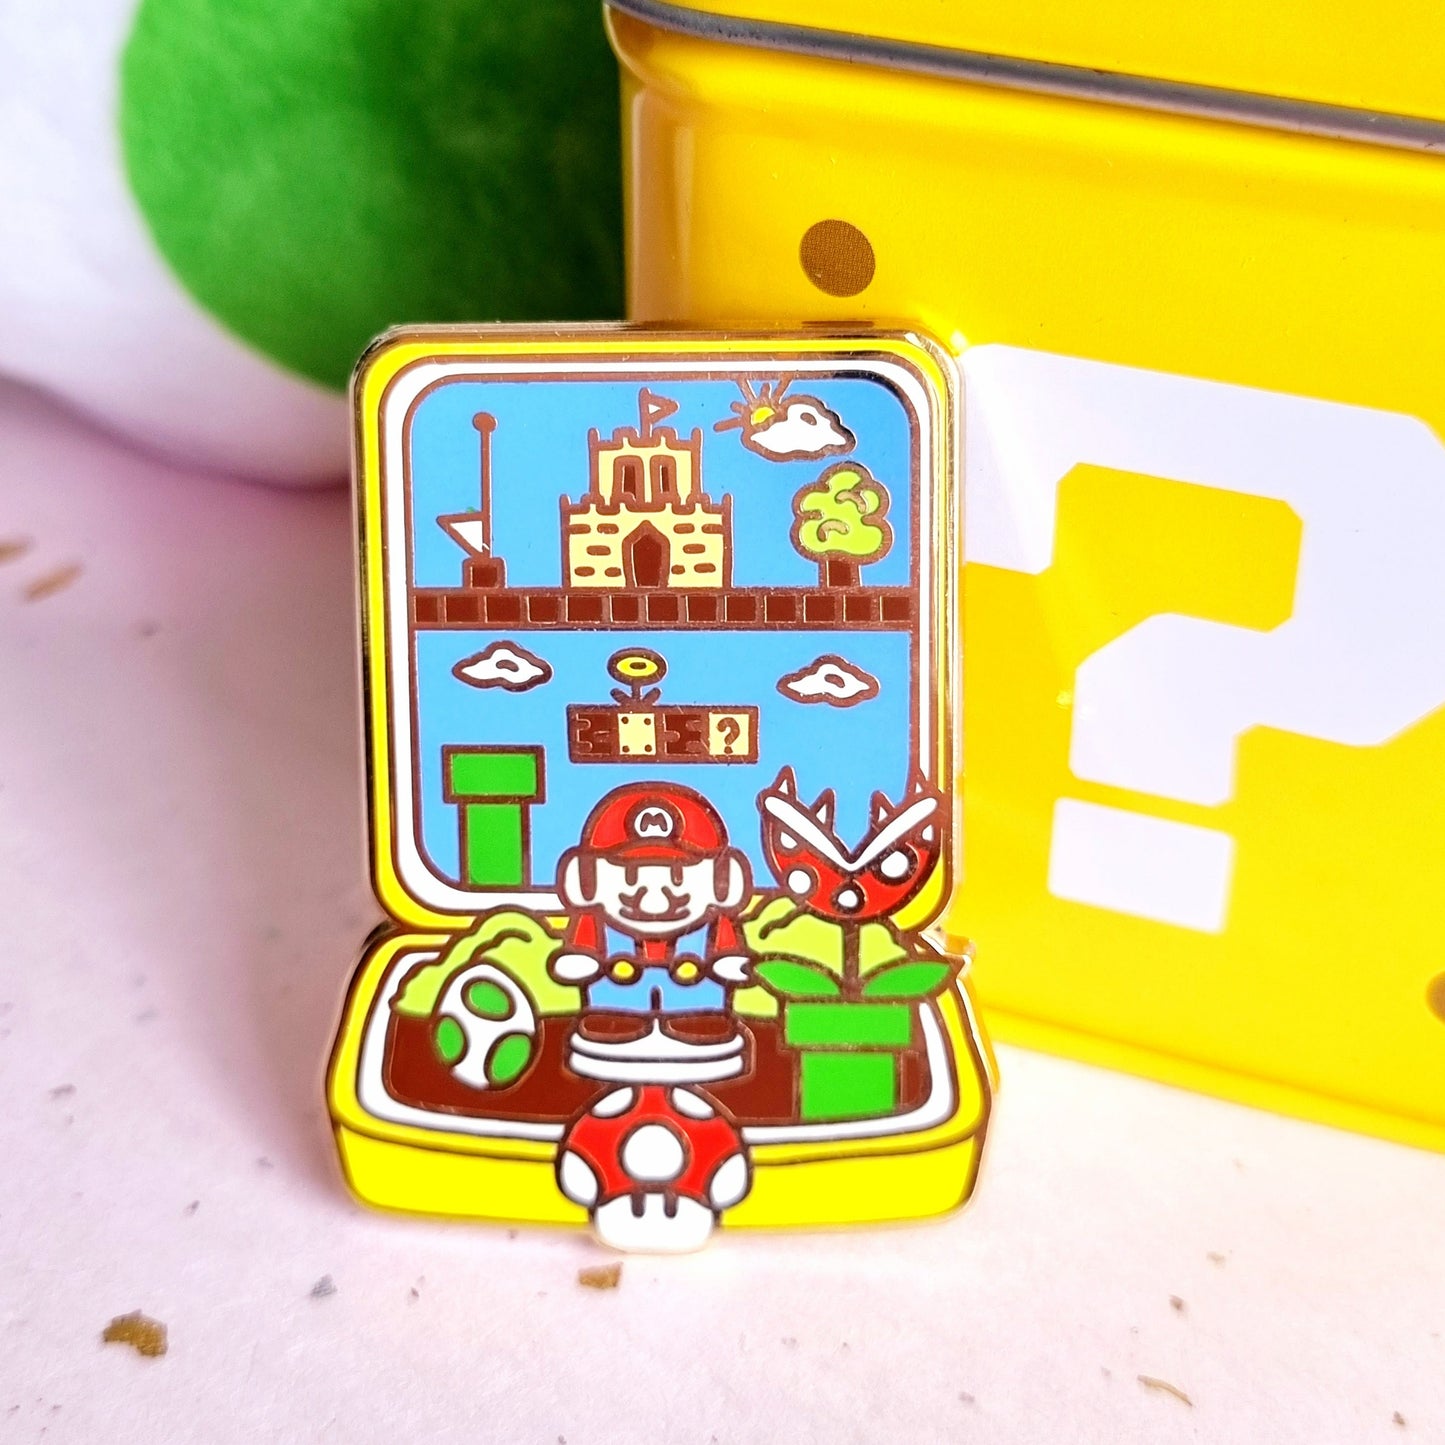 [PREORDER] Mario Hard Enamel Pin